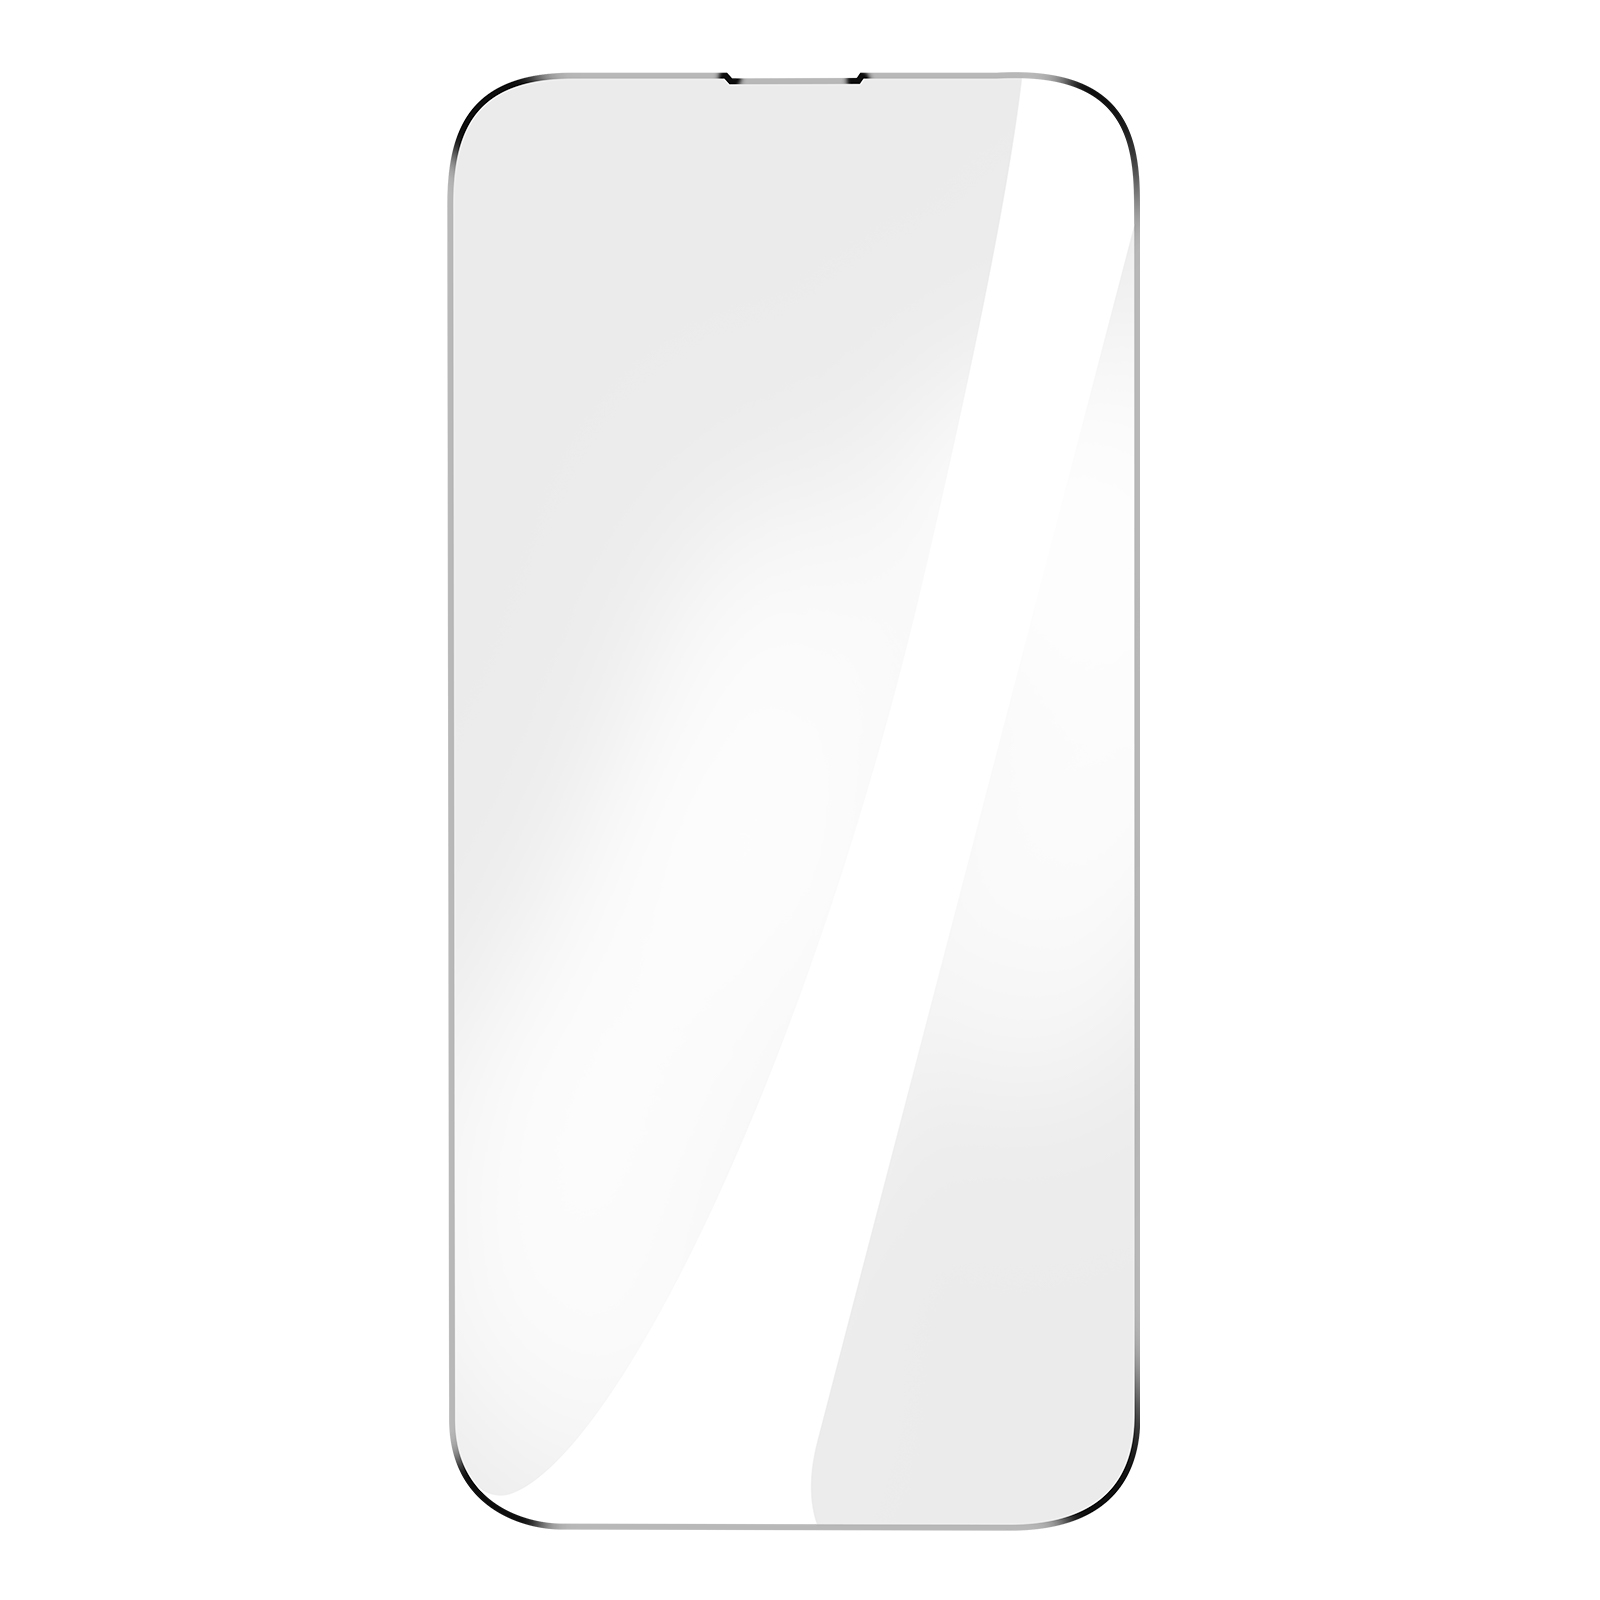 Pro iPhone Apple Härtegrad Glas-Folien(für 9H Max) 14 AVIZAR